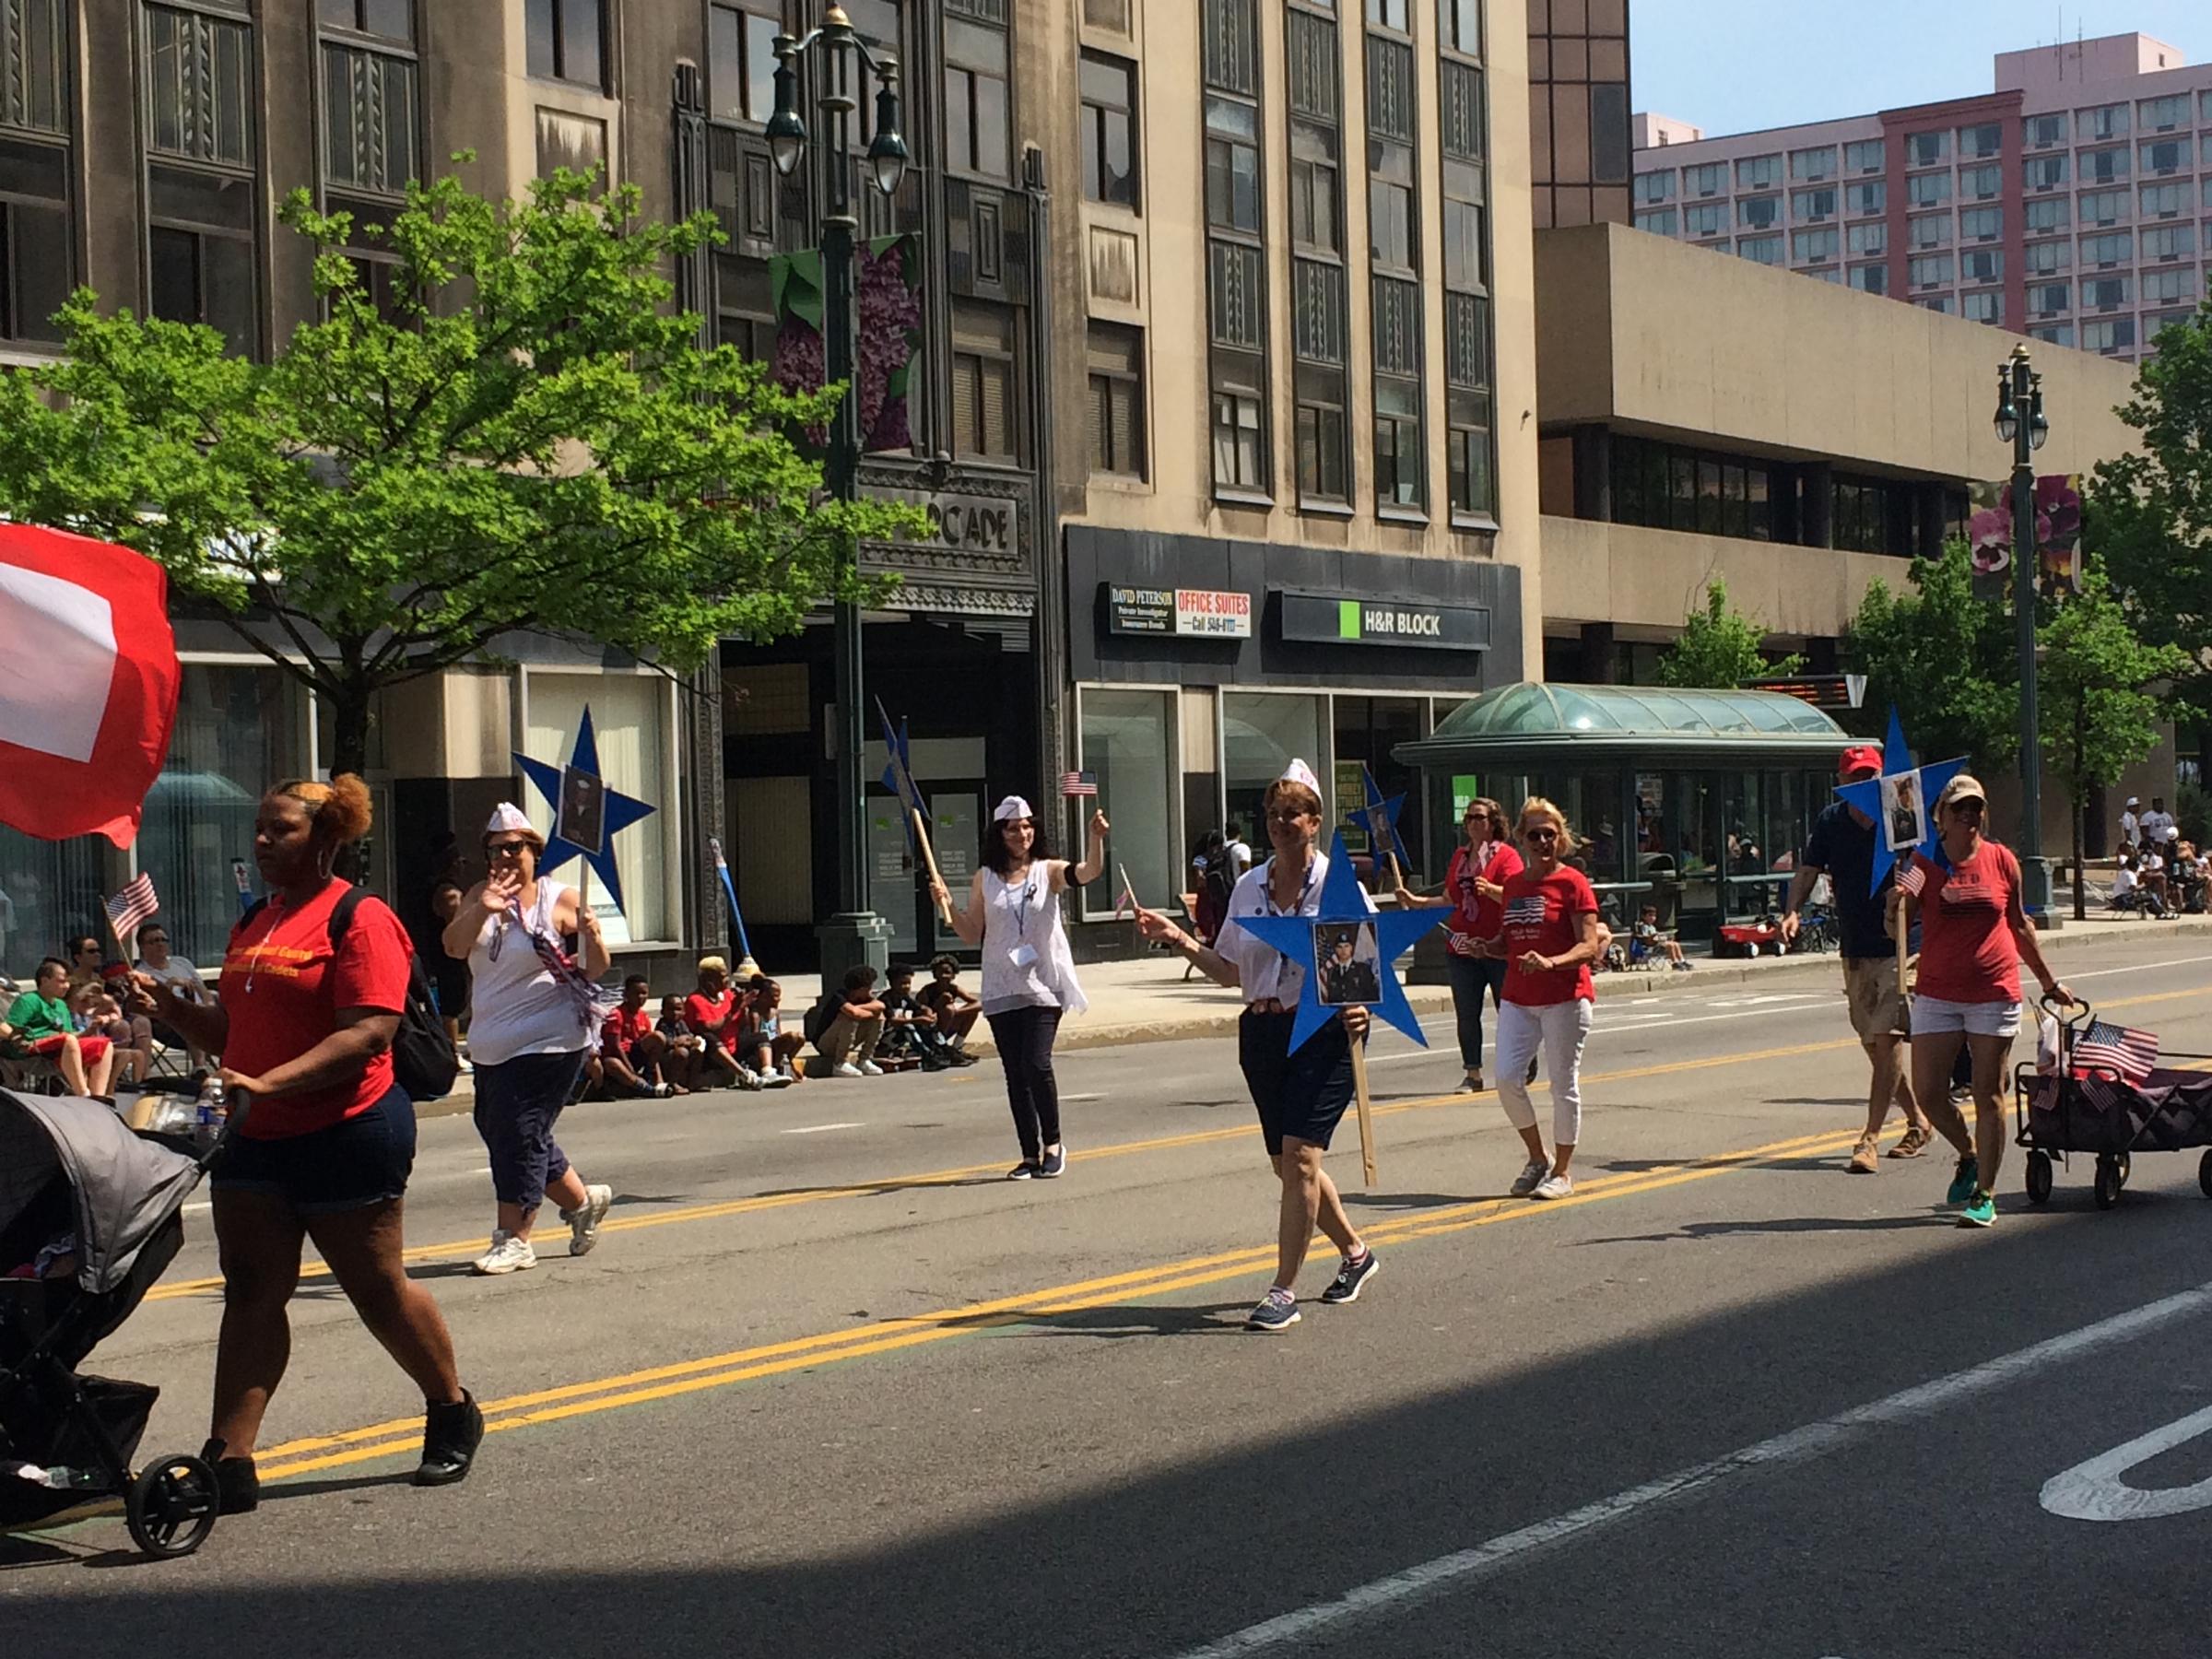 Memorial Day Parade marches through Rochester WXXI News